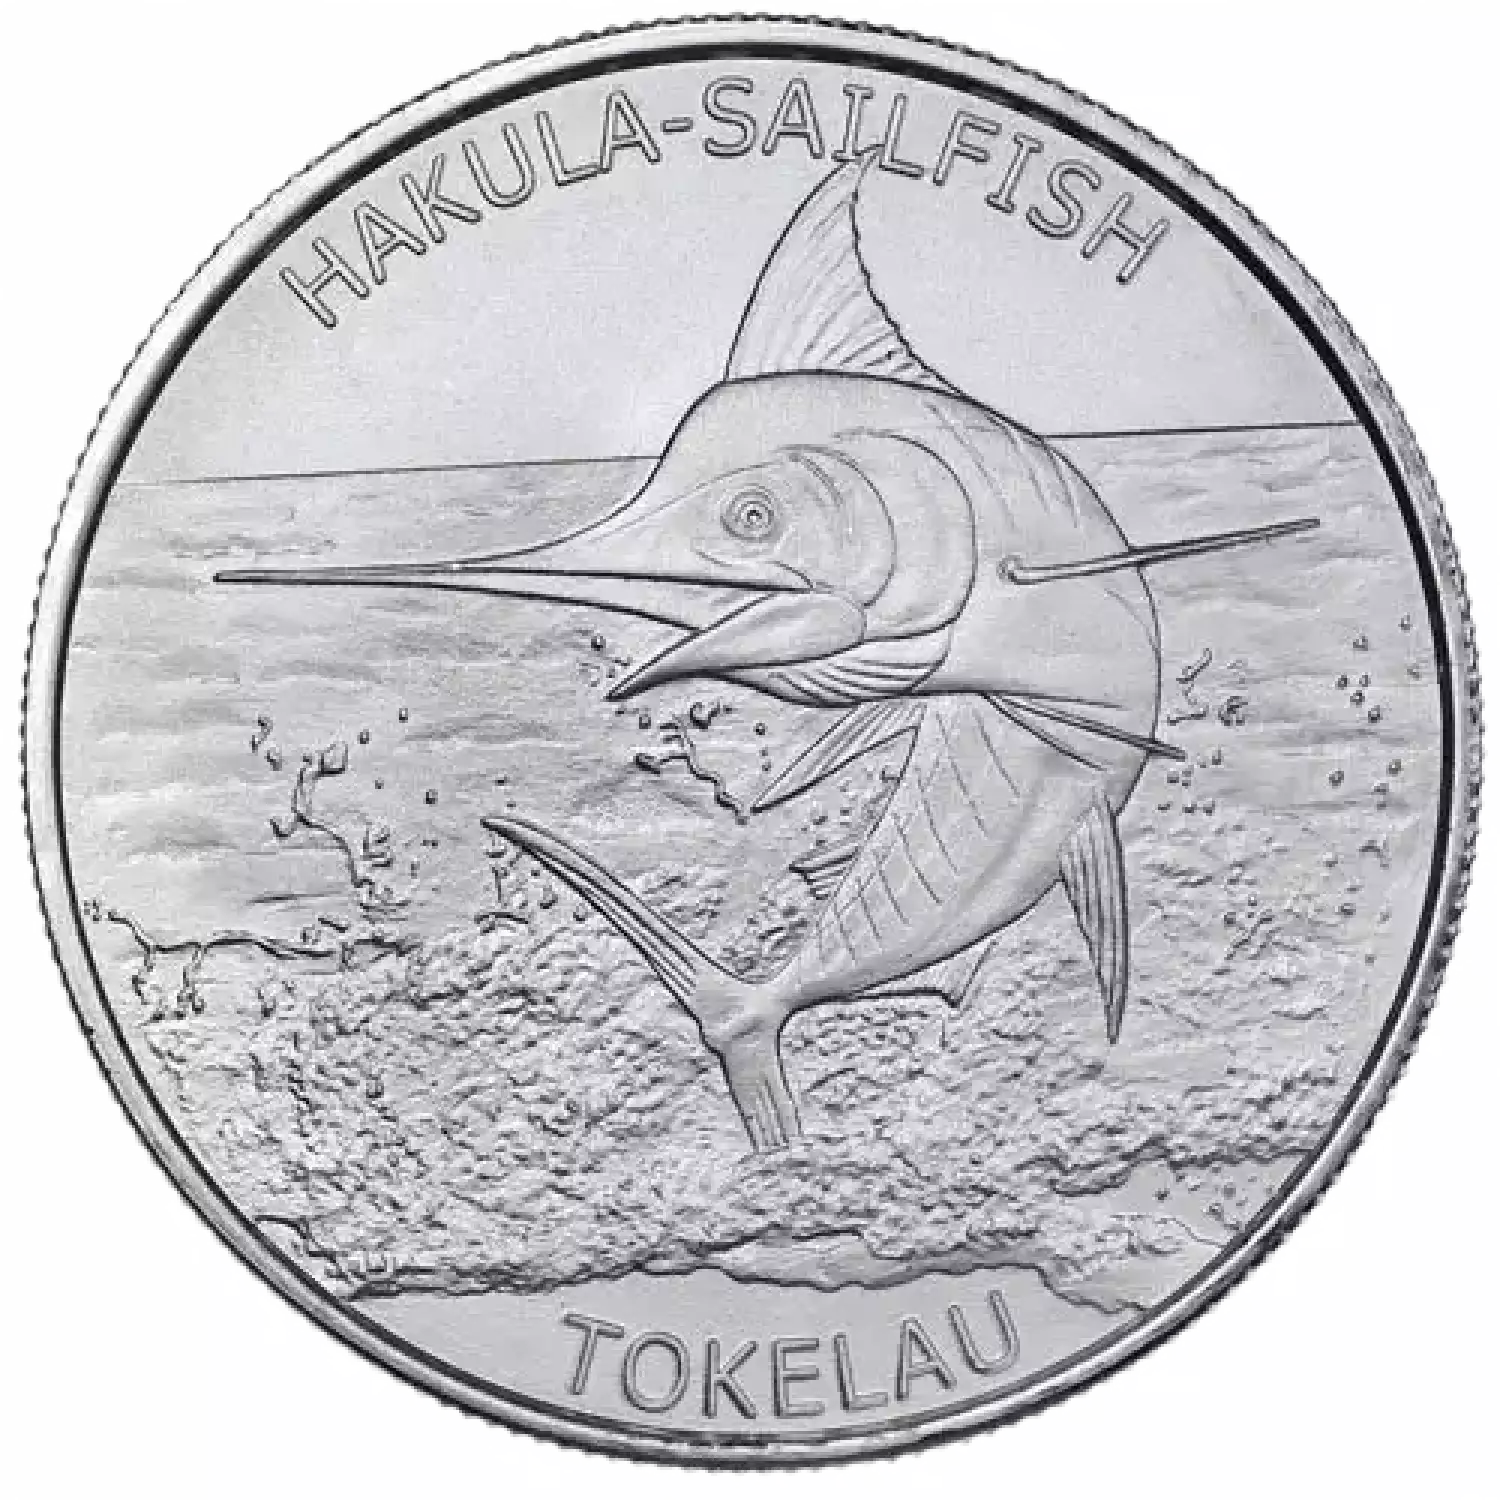 2016 1 oz Tokelau Silver Sailfish Coin (BU) (3)